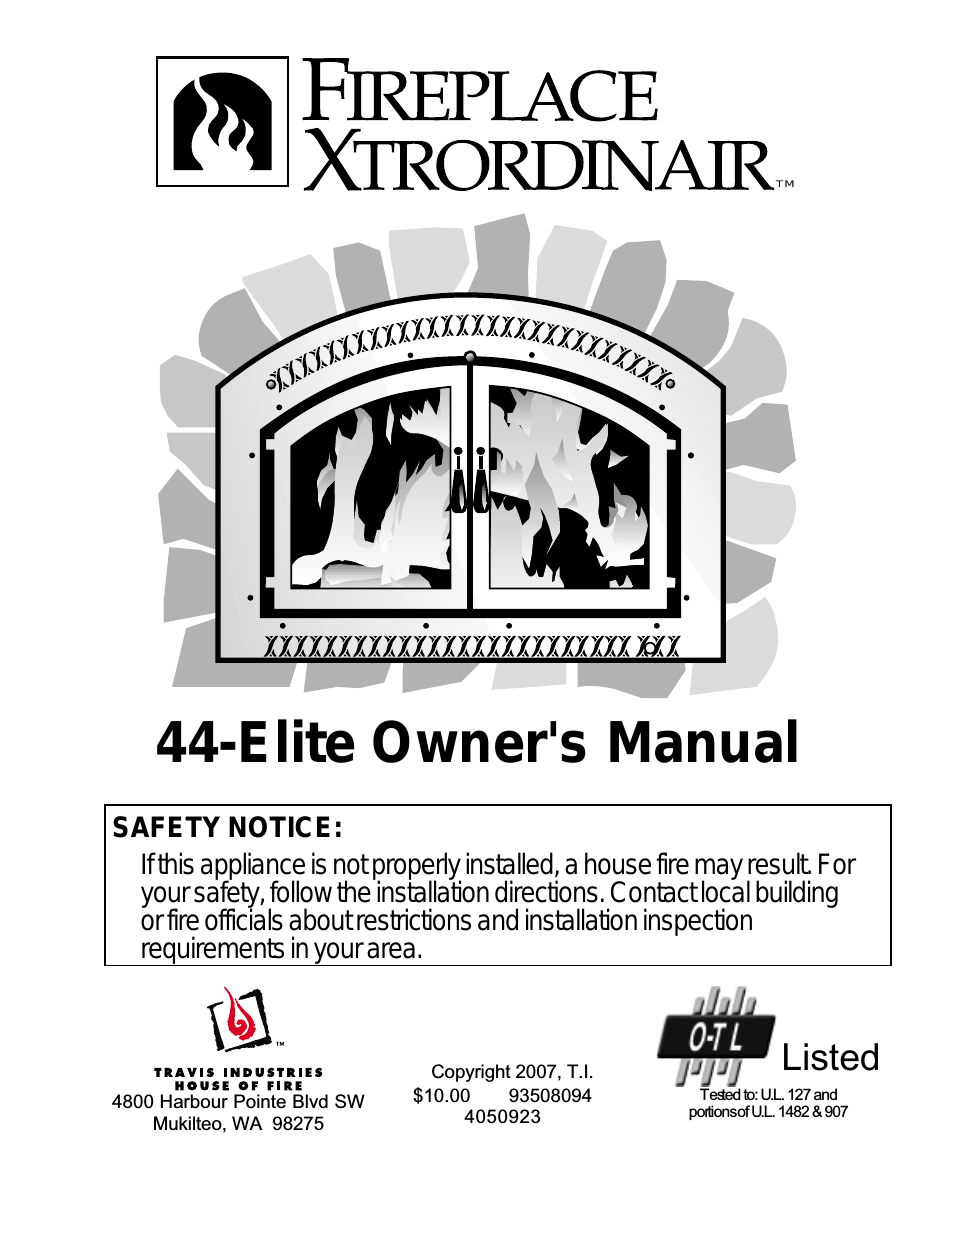 44-Elite